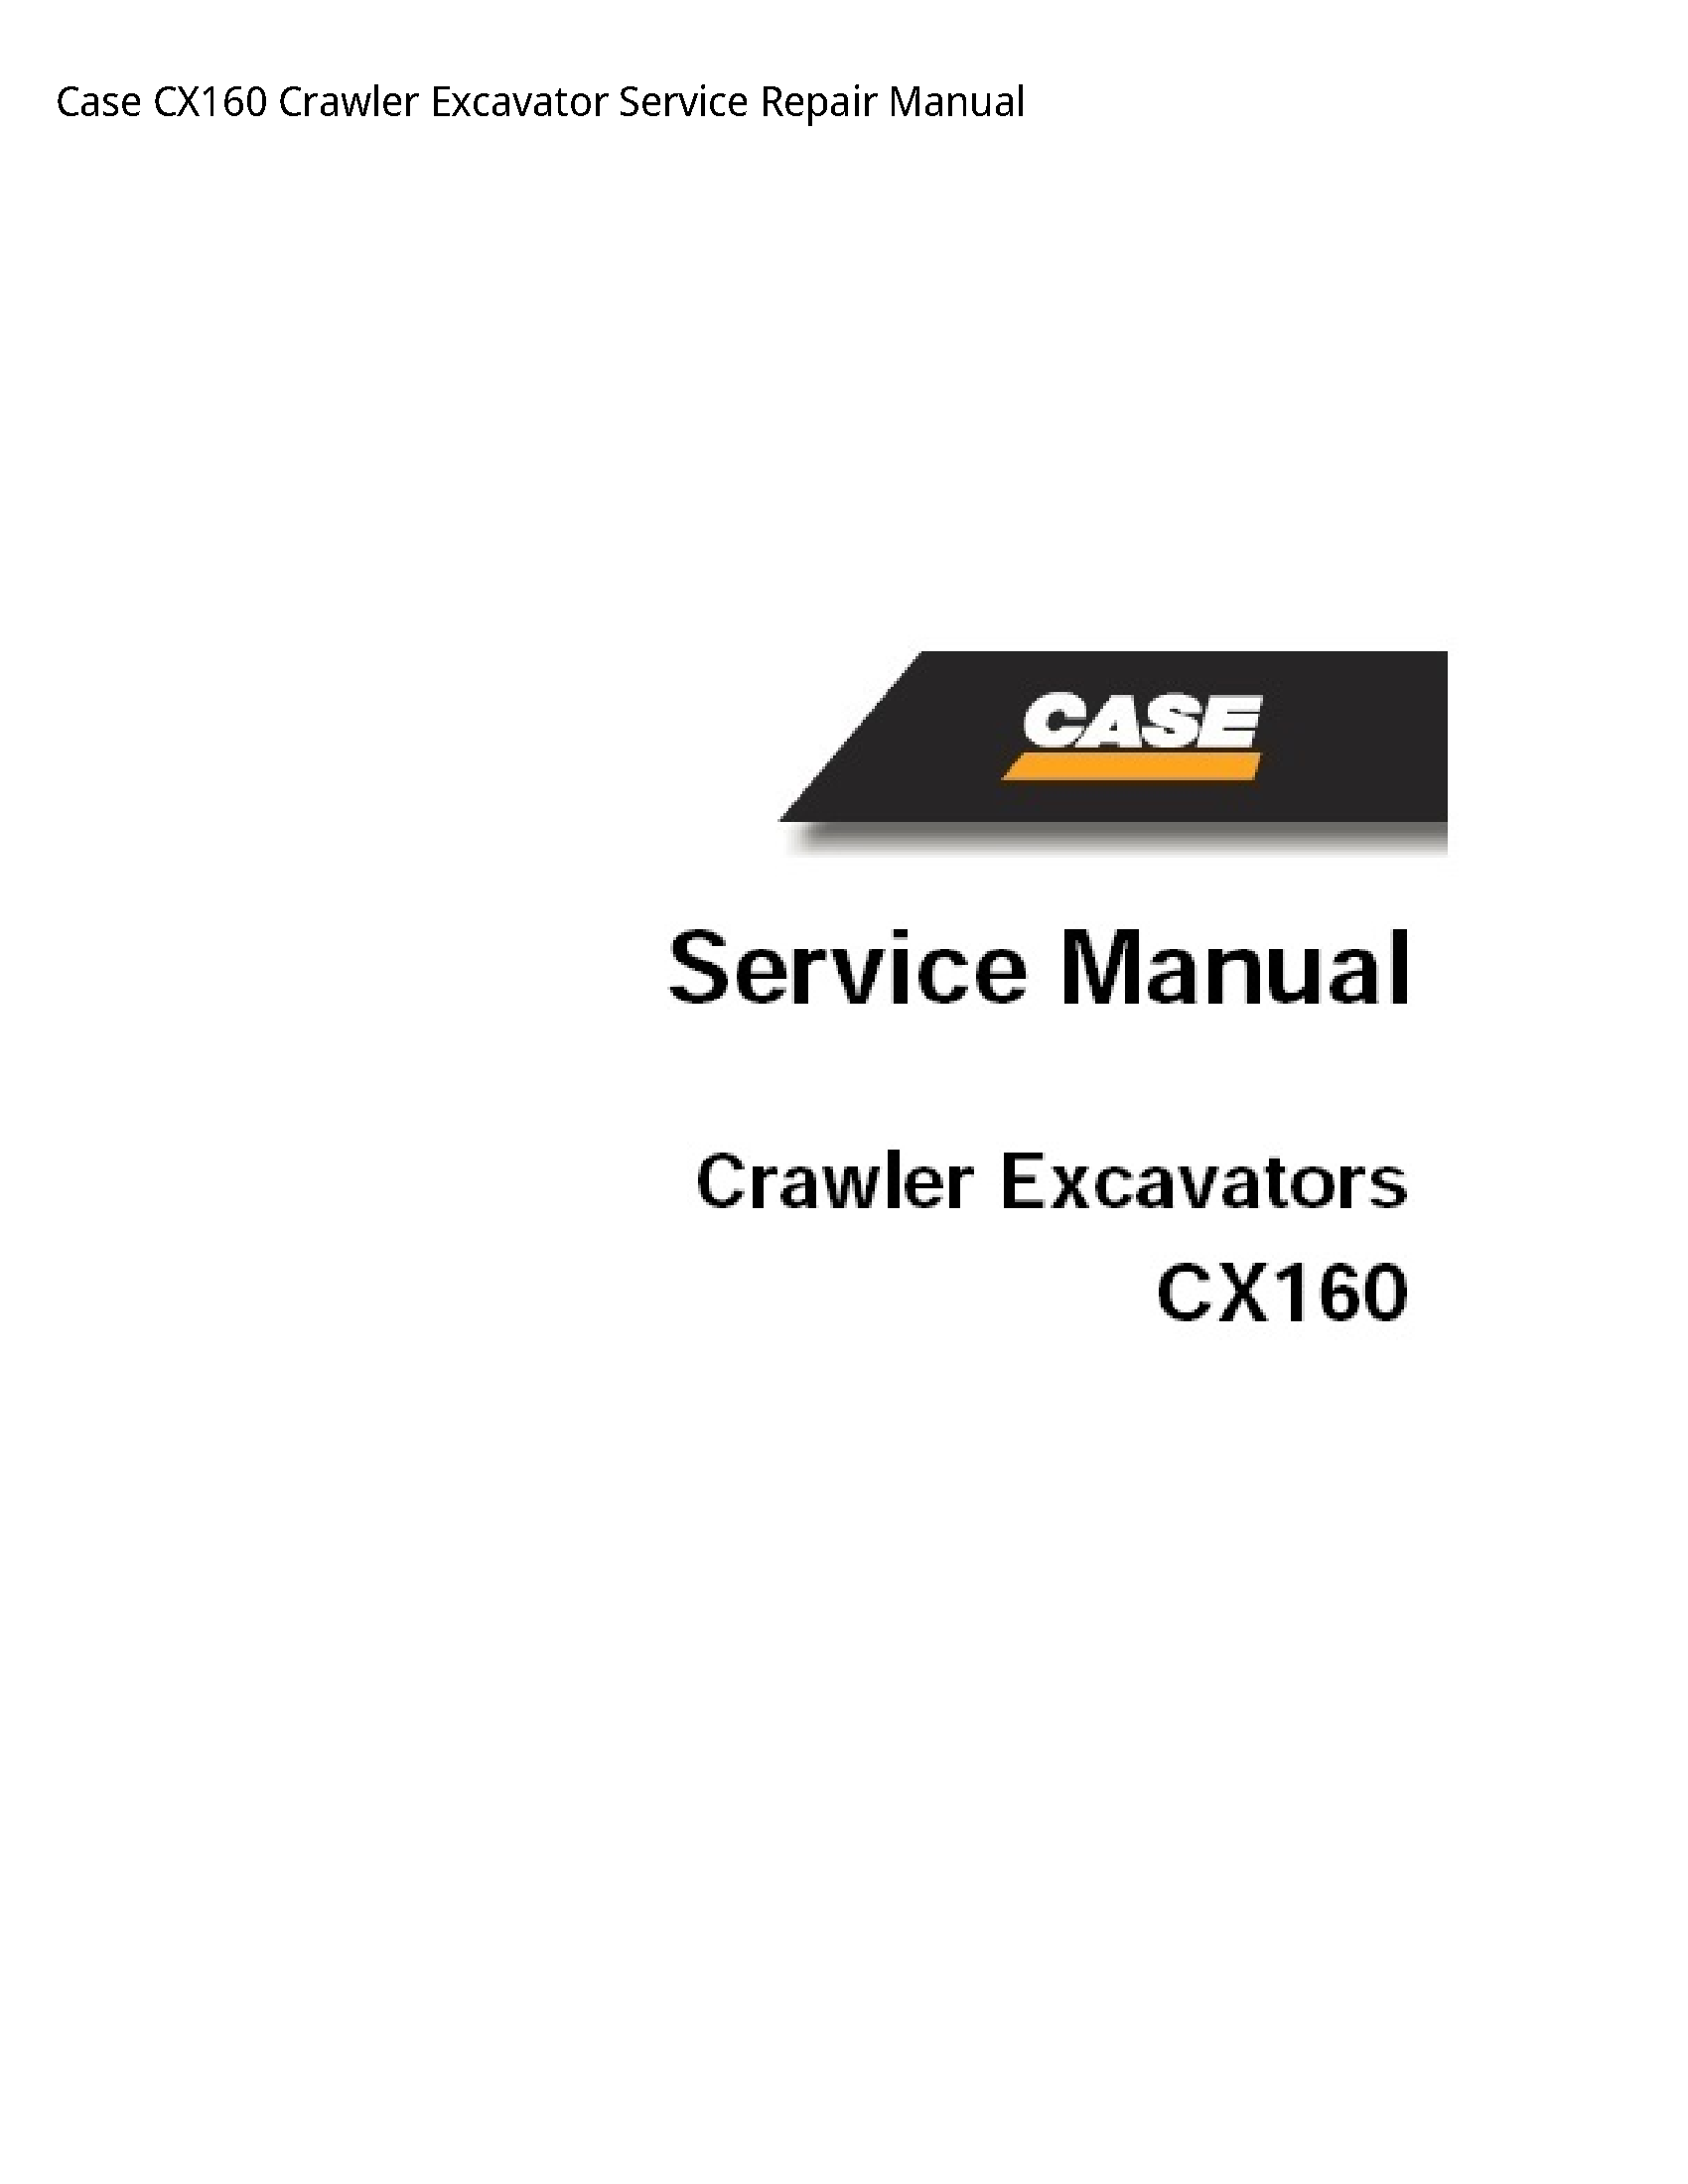 Case/Case IH CX160 Crawler Excavator manual